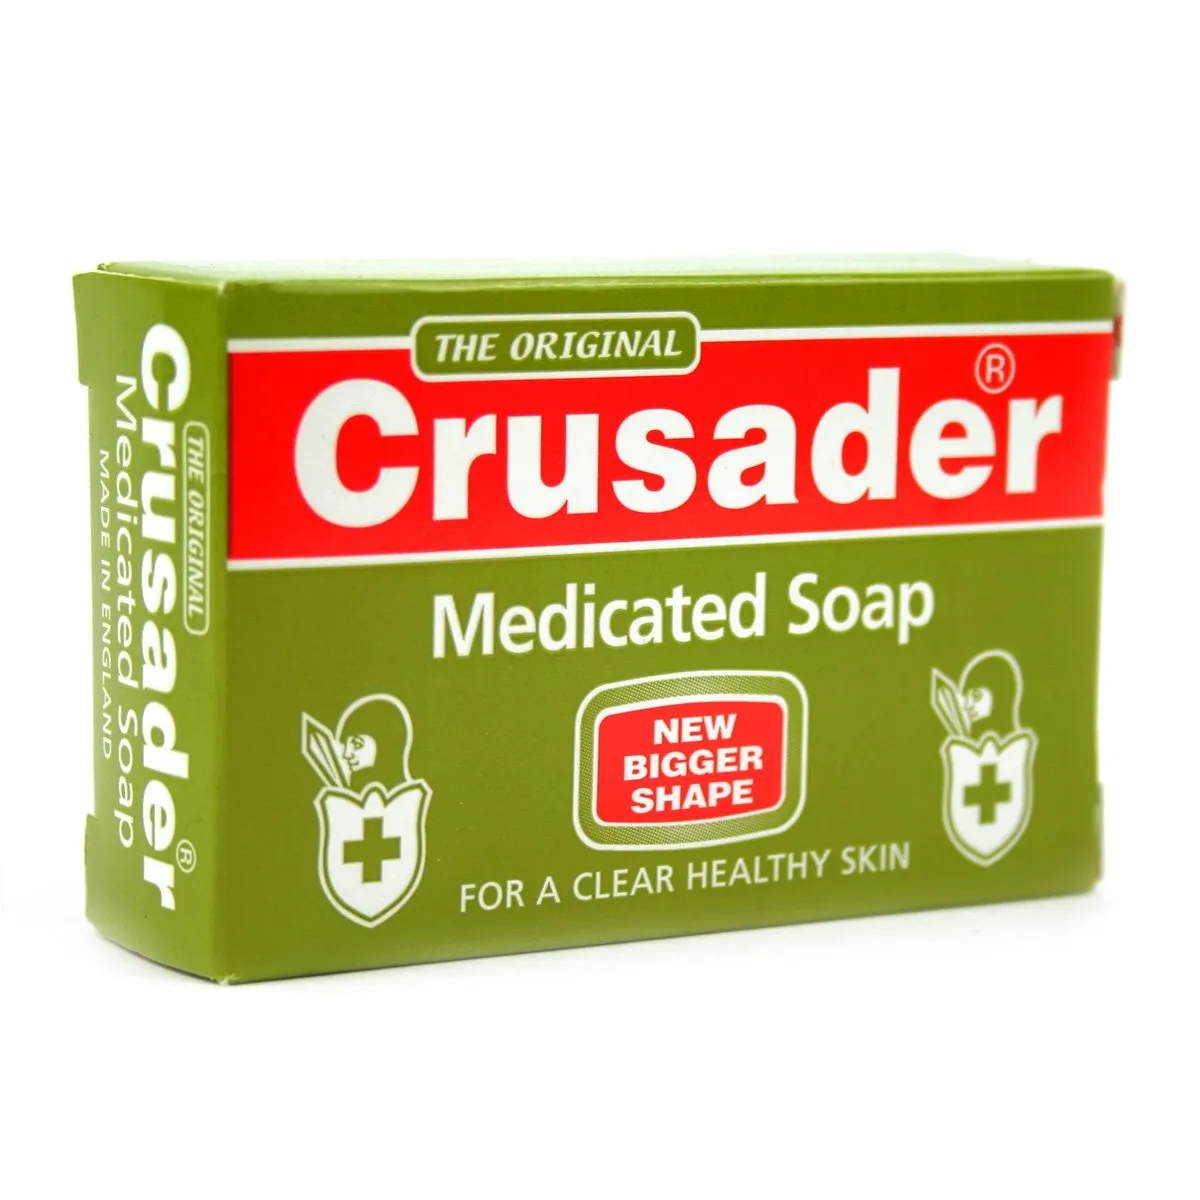 How to Know Original Crusader Soap